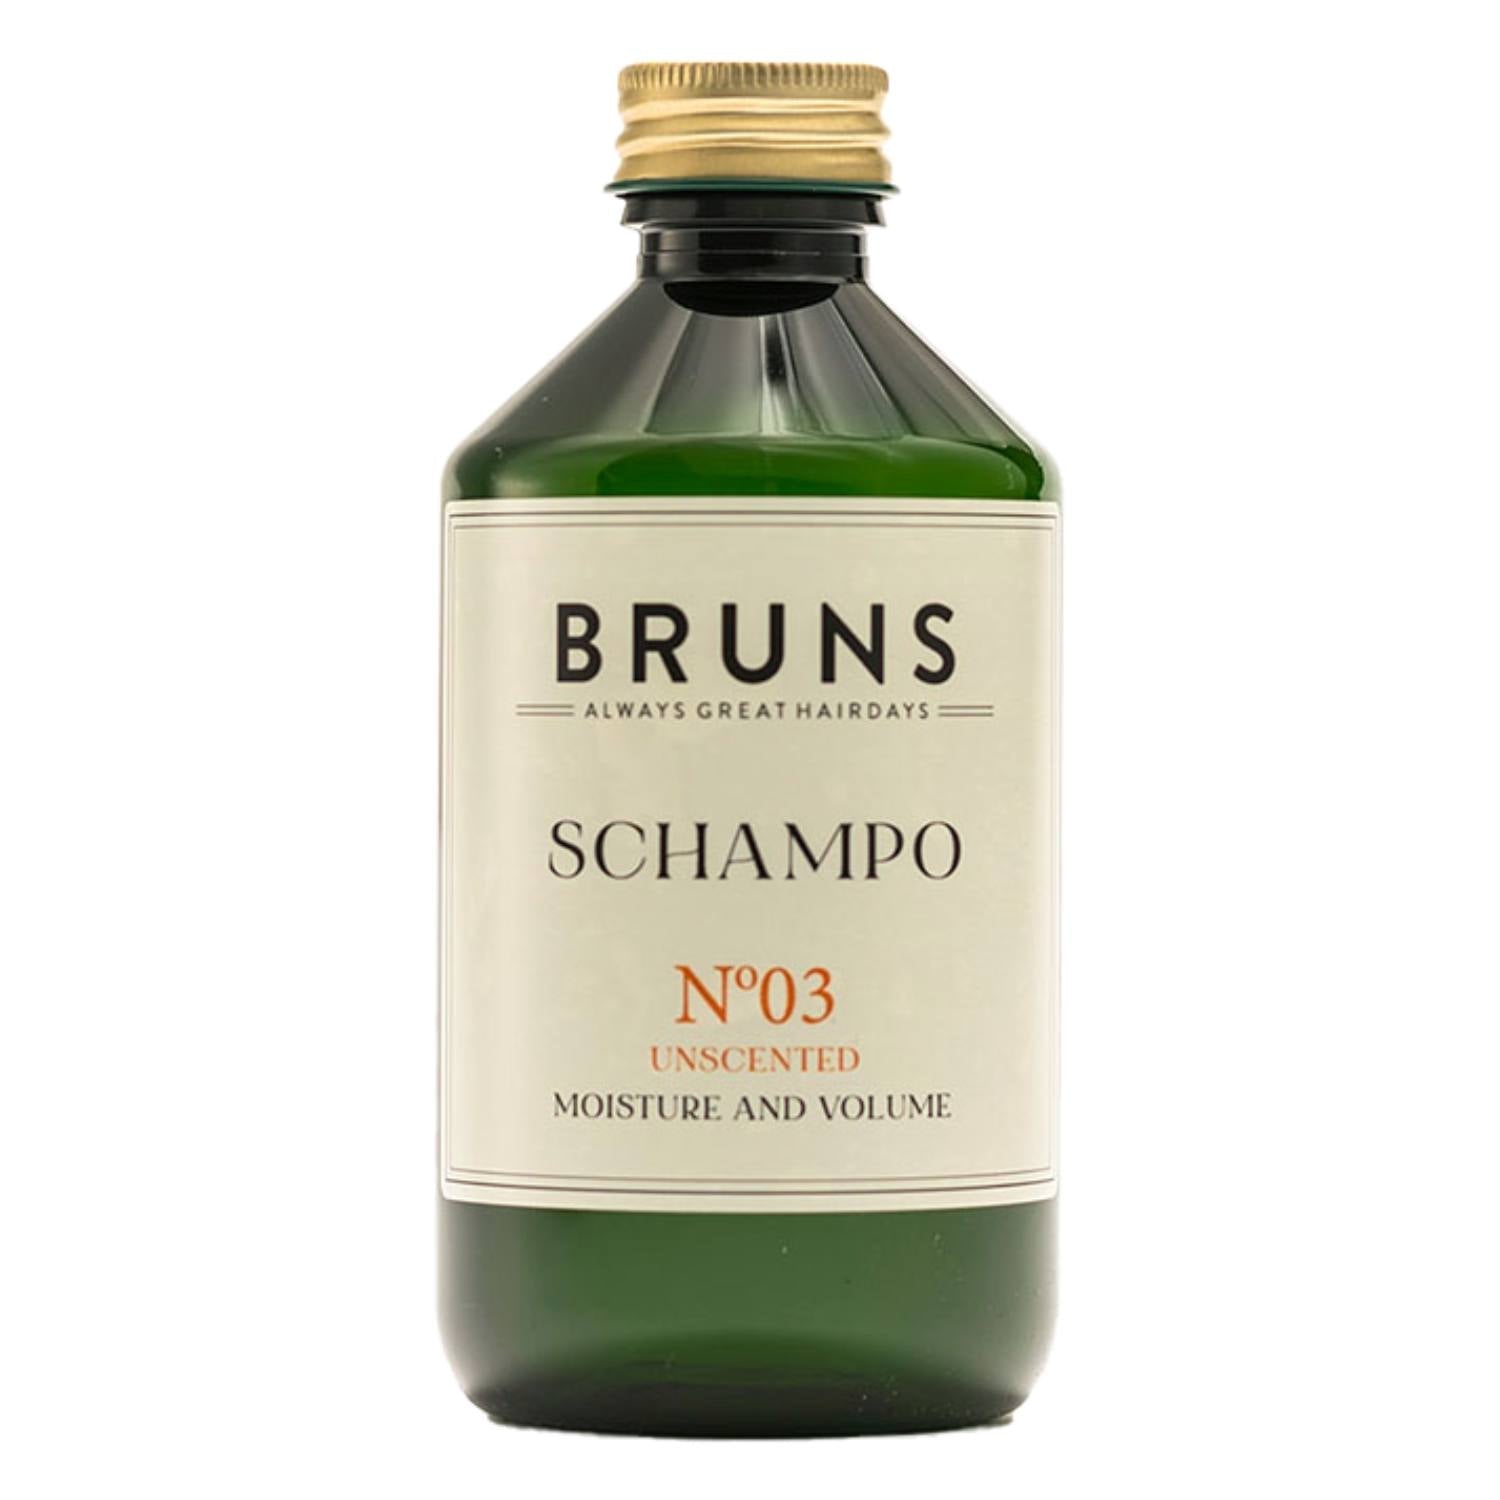 Billede af Shampoo Bruns Nº 03, 300 ml. - Shampoo fra Bruns